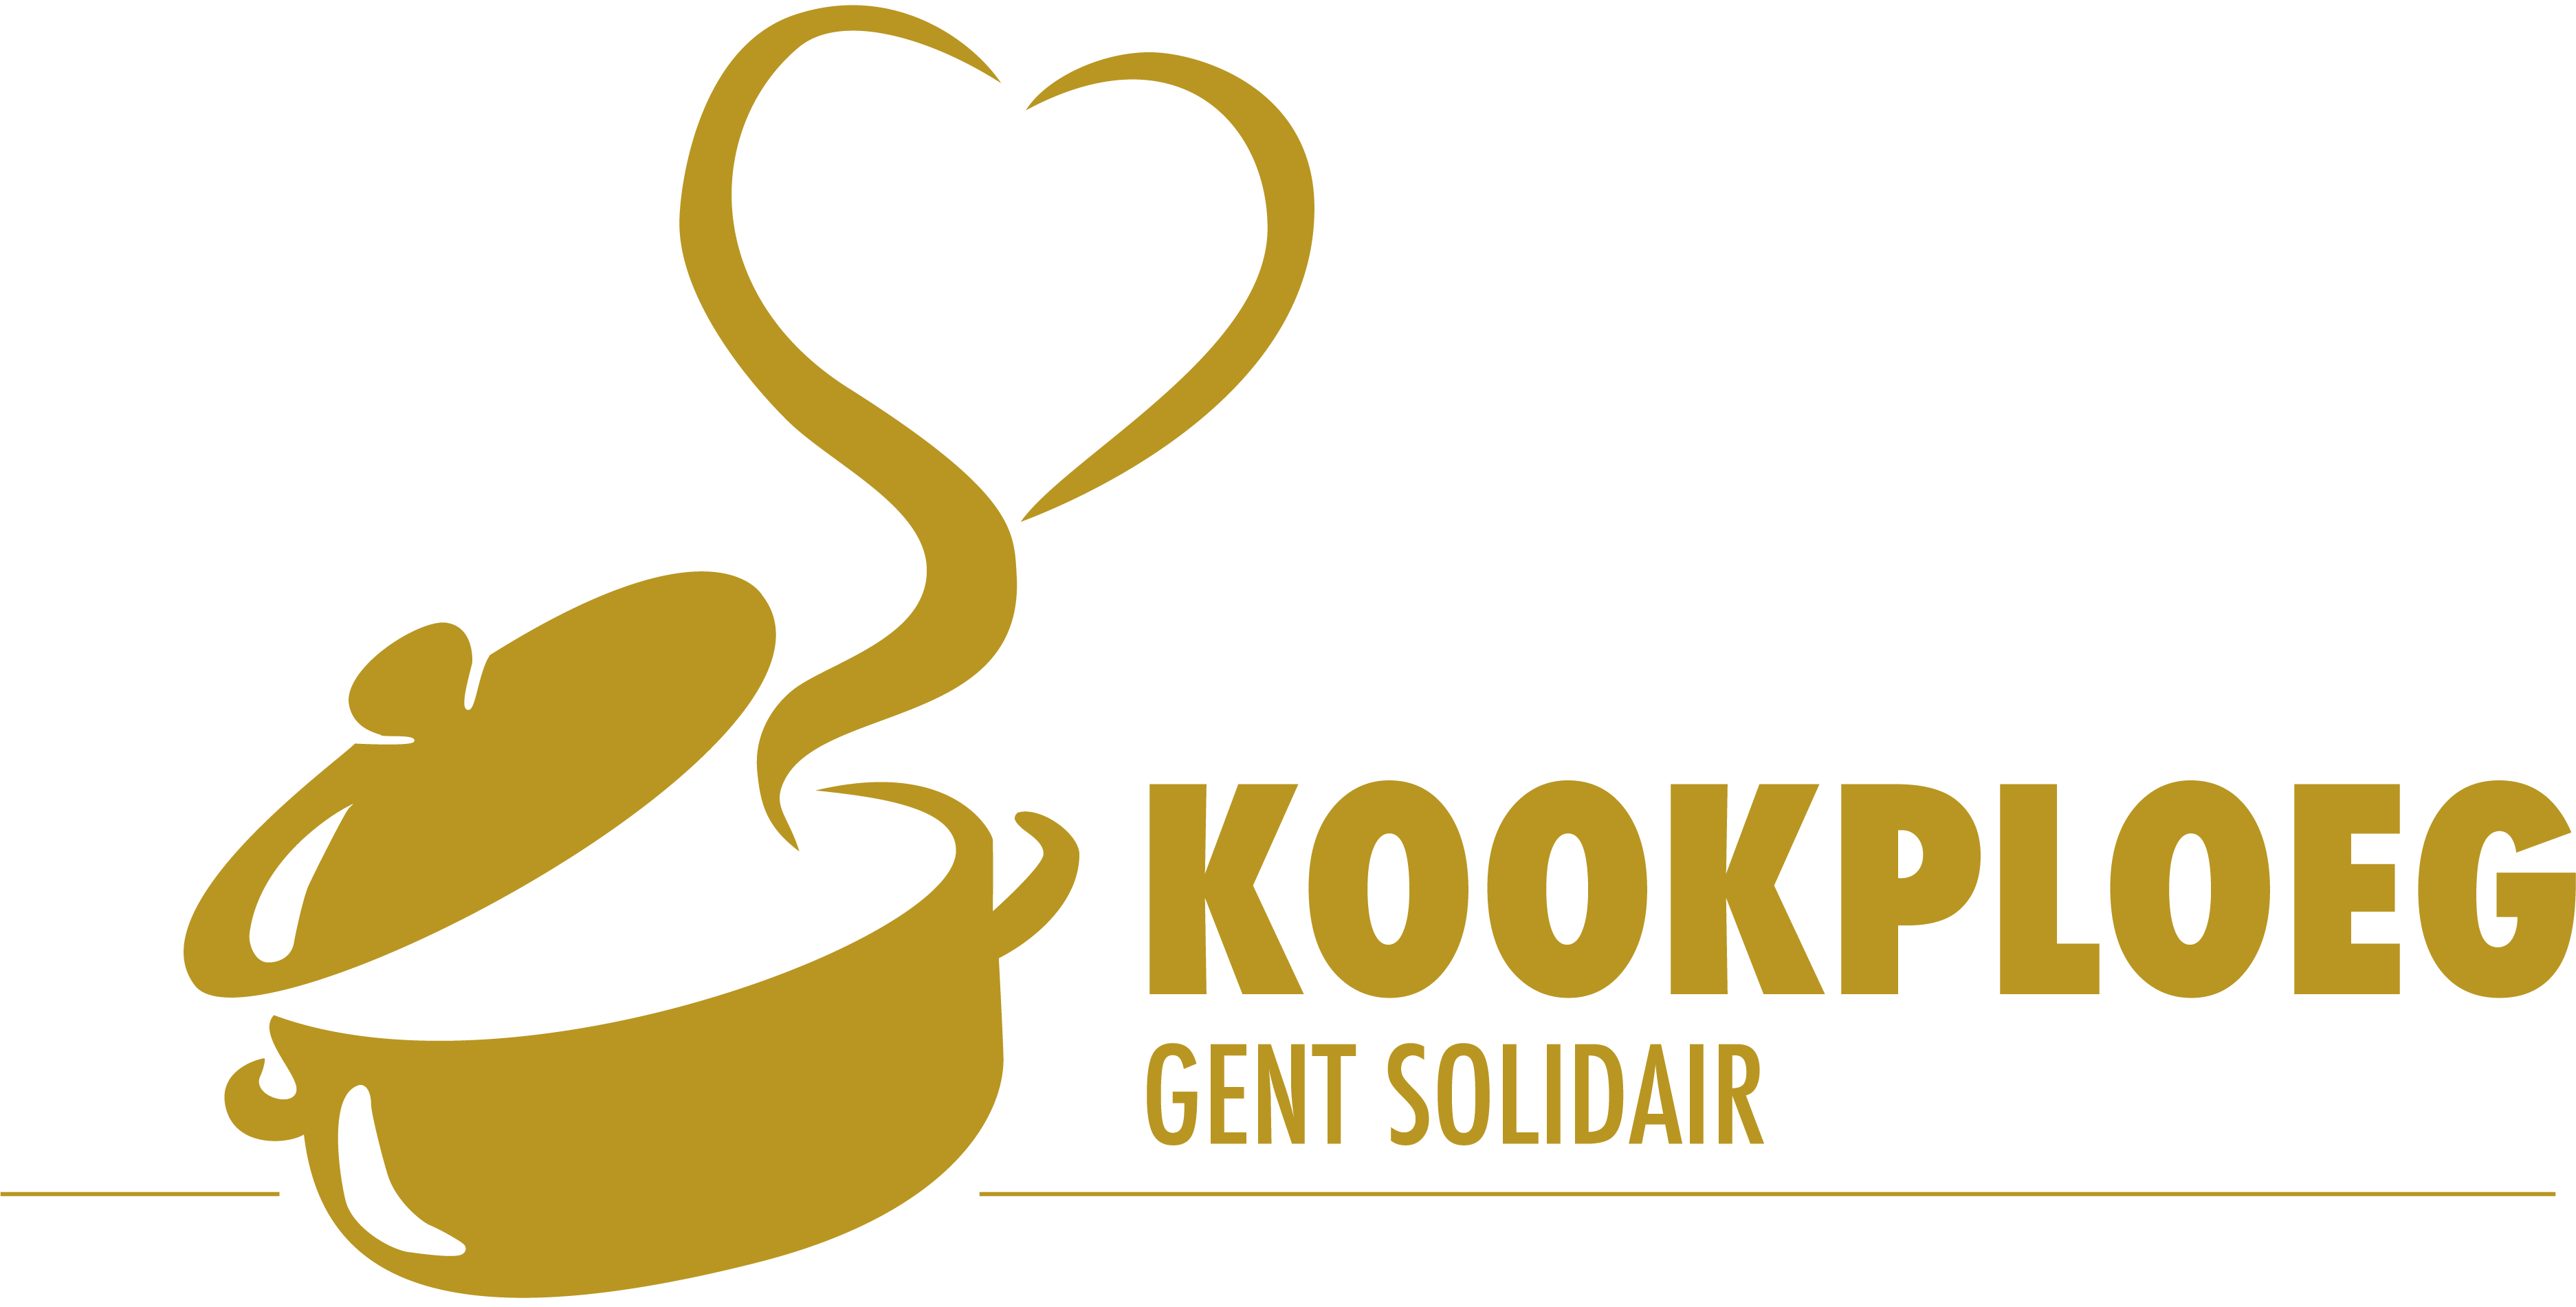 Kookploeg Solidair Gent - logo